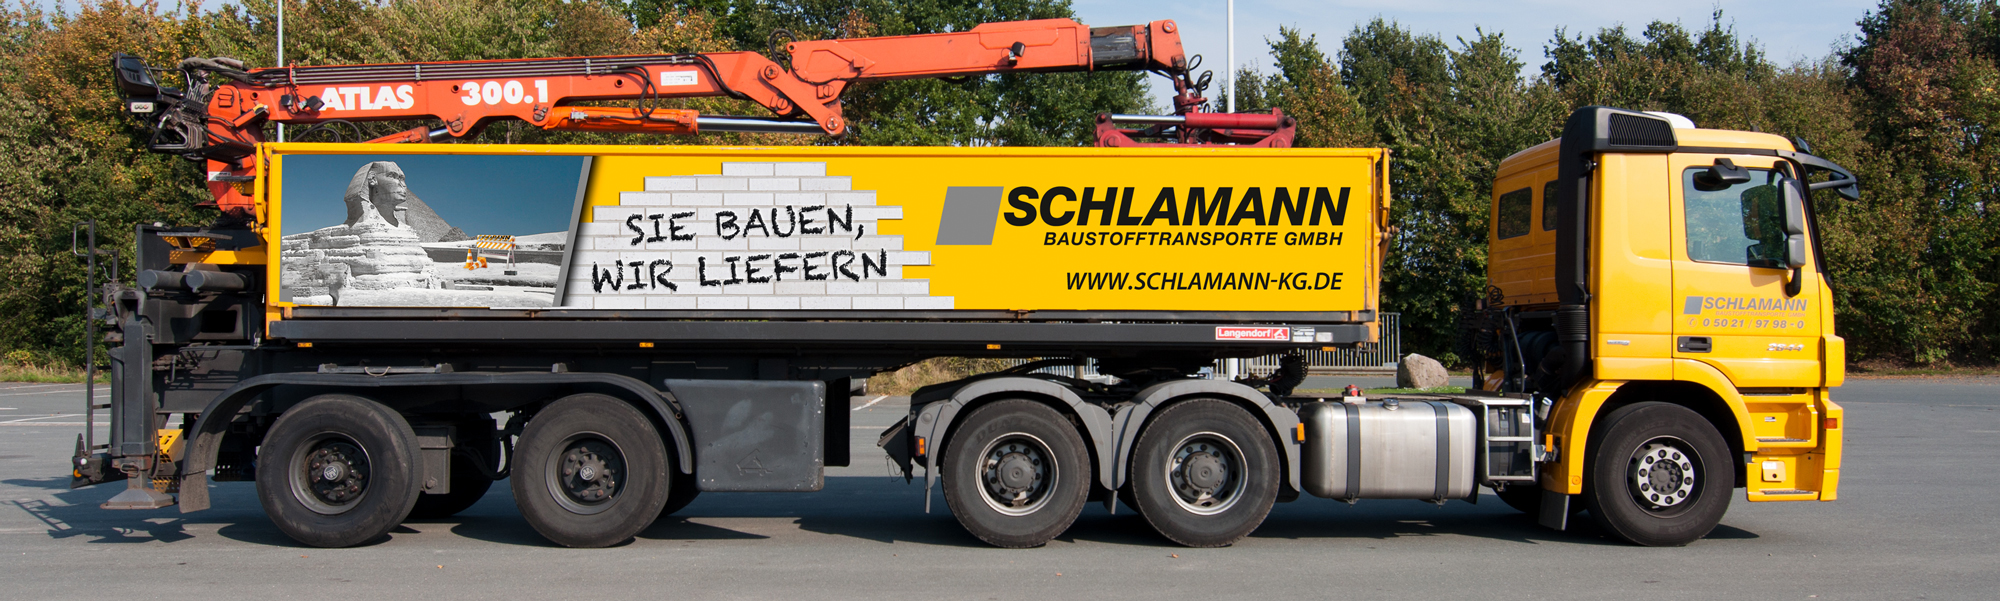 Fahrzeugbeschriftung: Schlamann